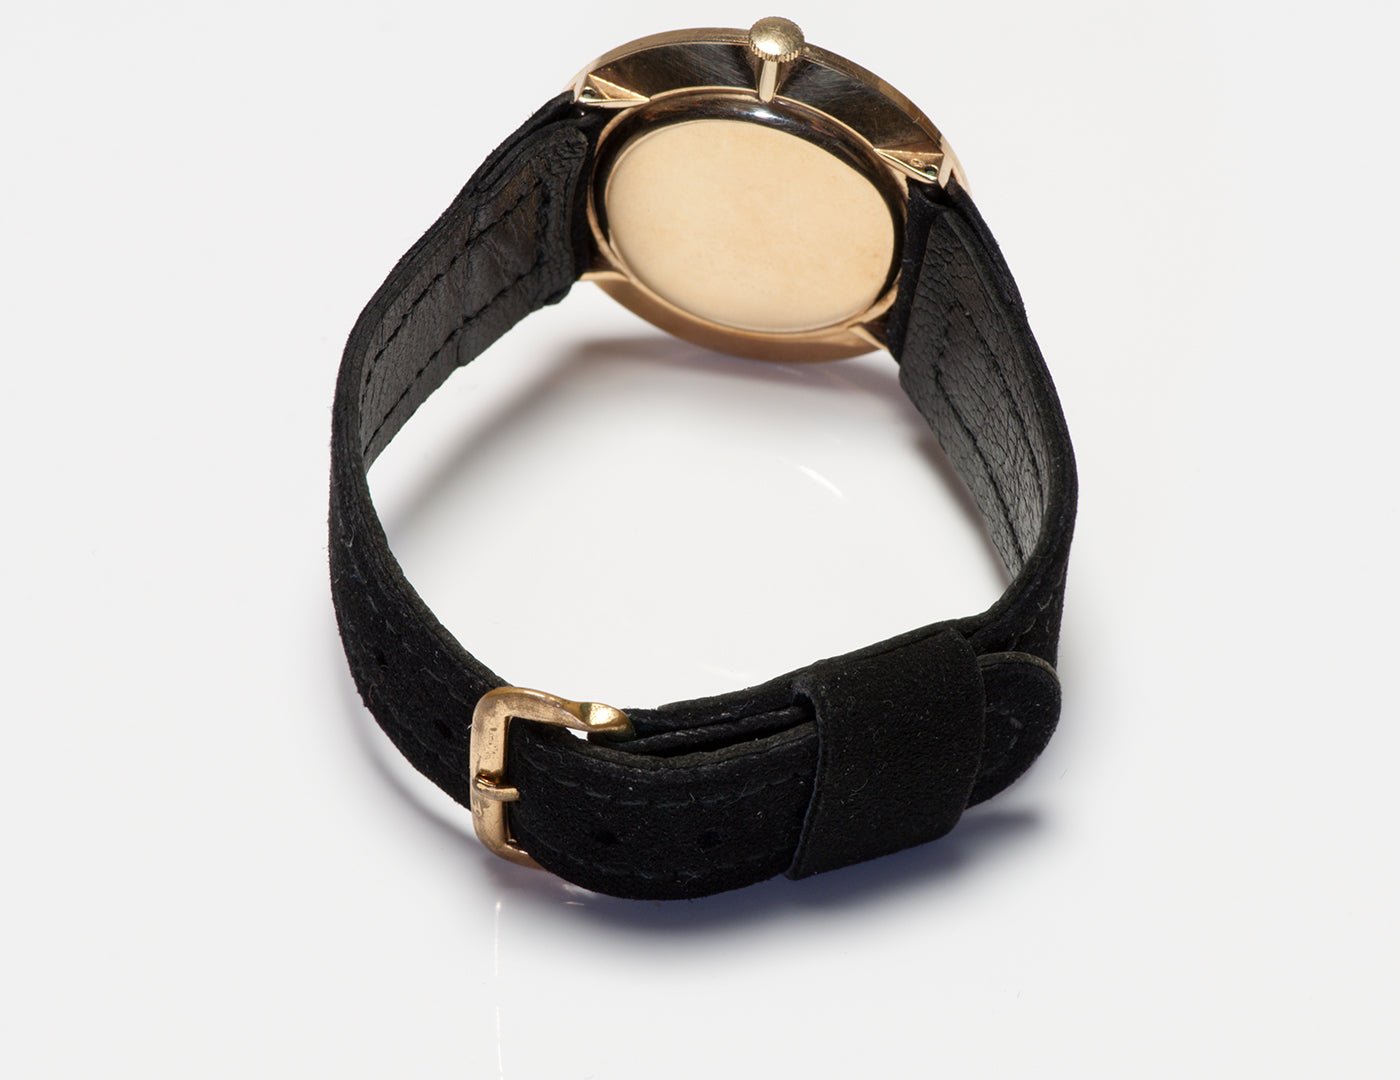 Vintage Paul Breguette Gold Men’s Wrist Watch